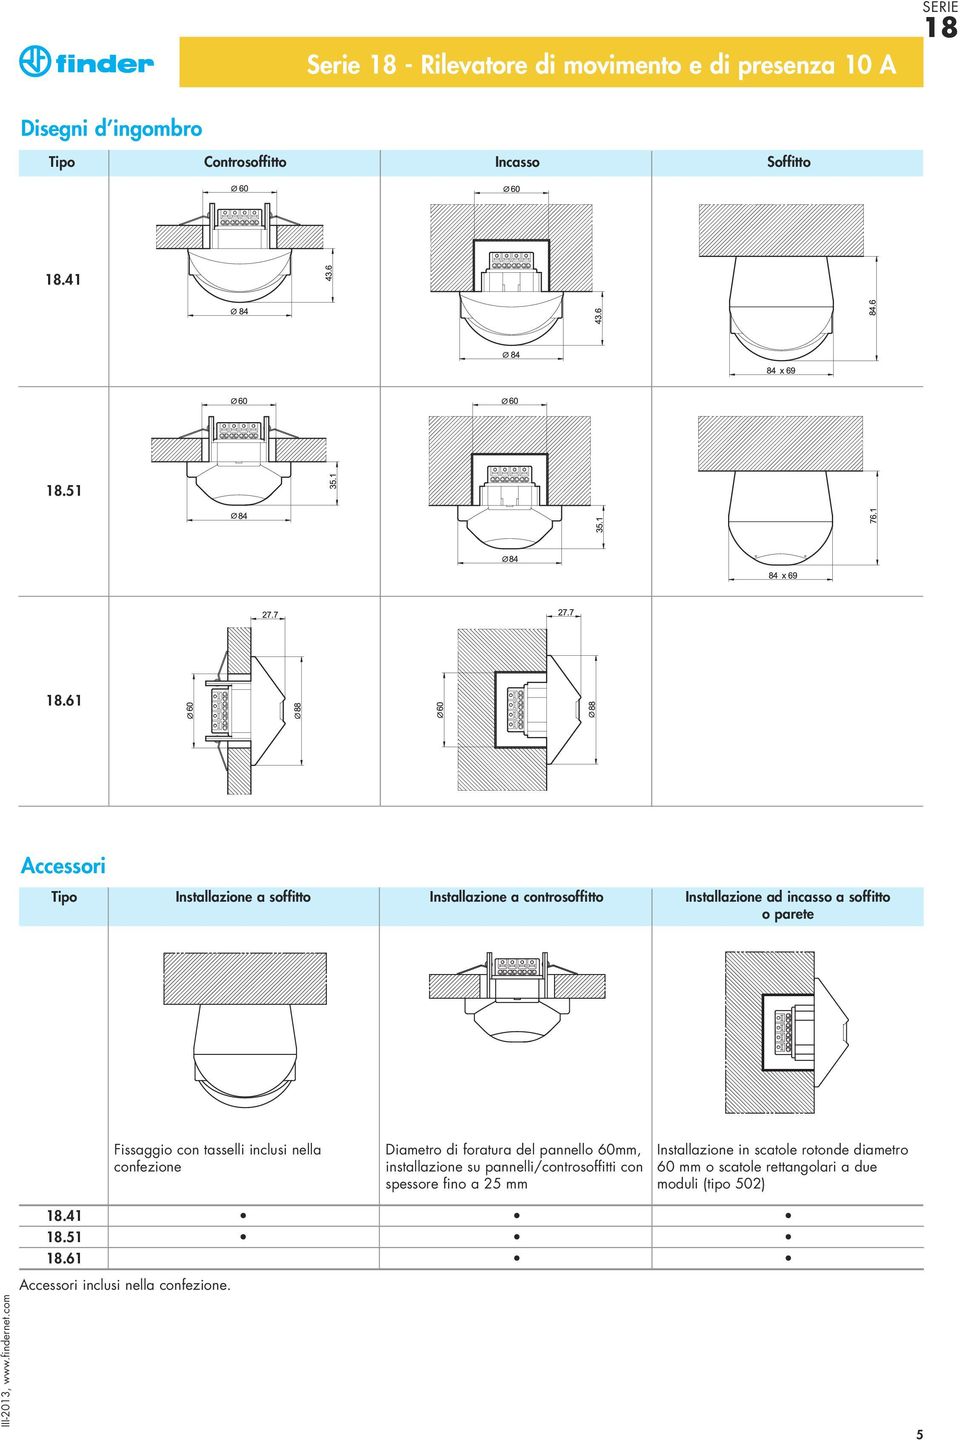 tasselli inclusi nella confezione Diametro di foratura del pannello 60mm, installazione su pannelli/controsoffitti con spessore fino